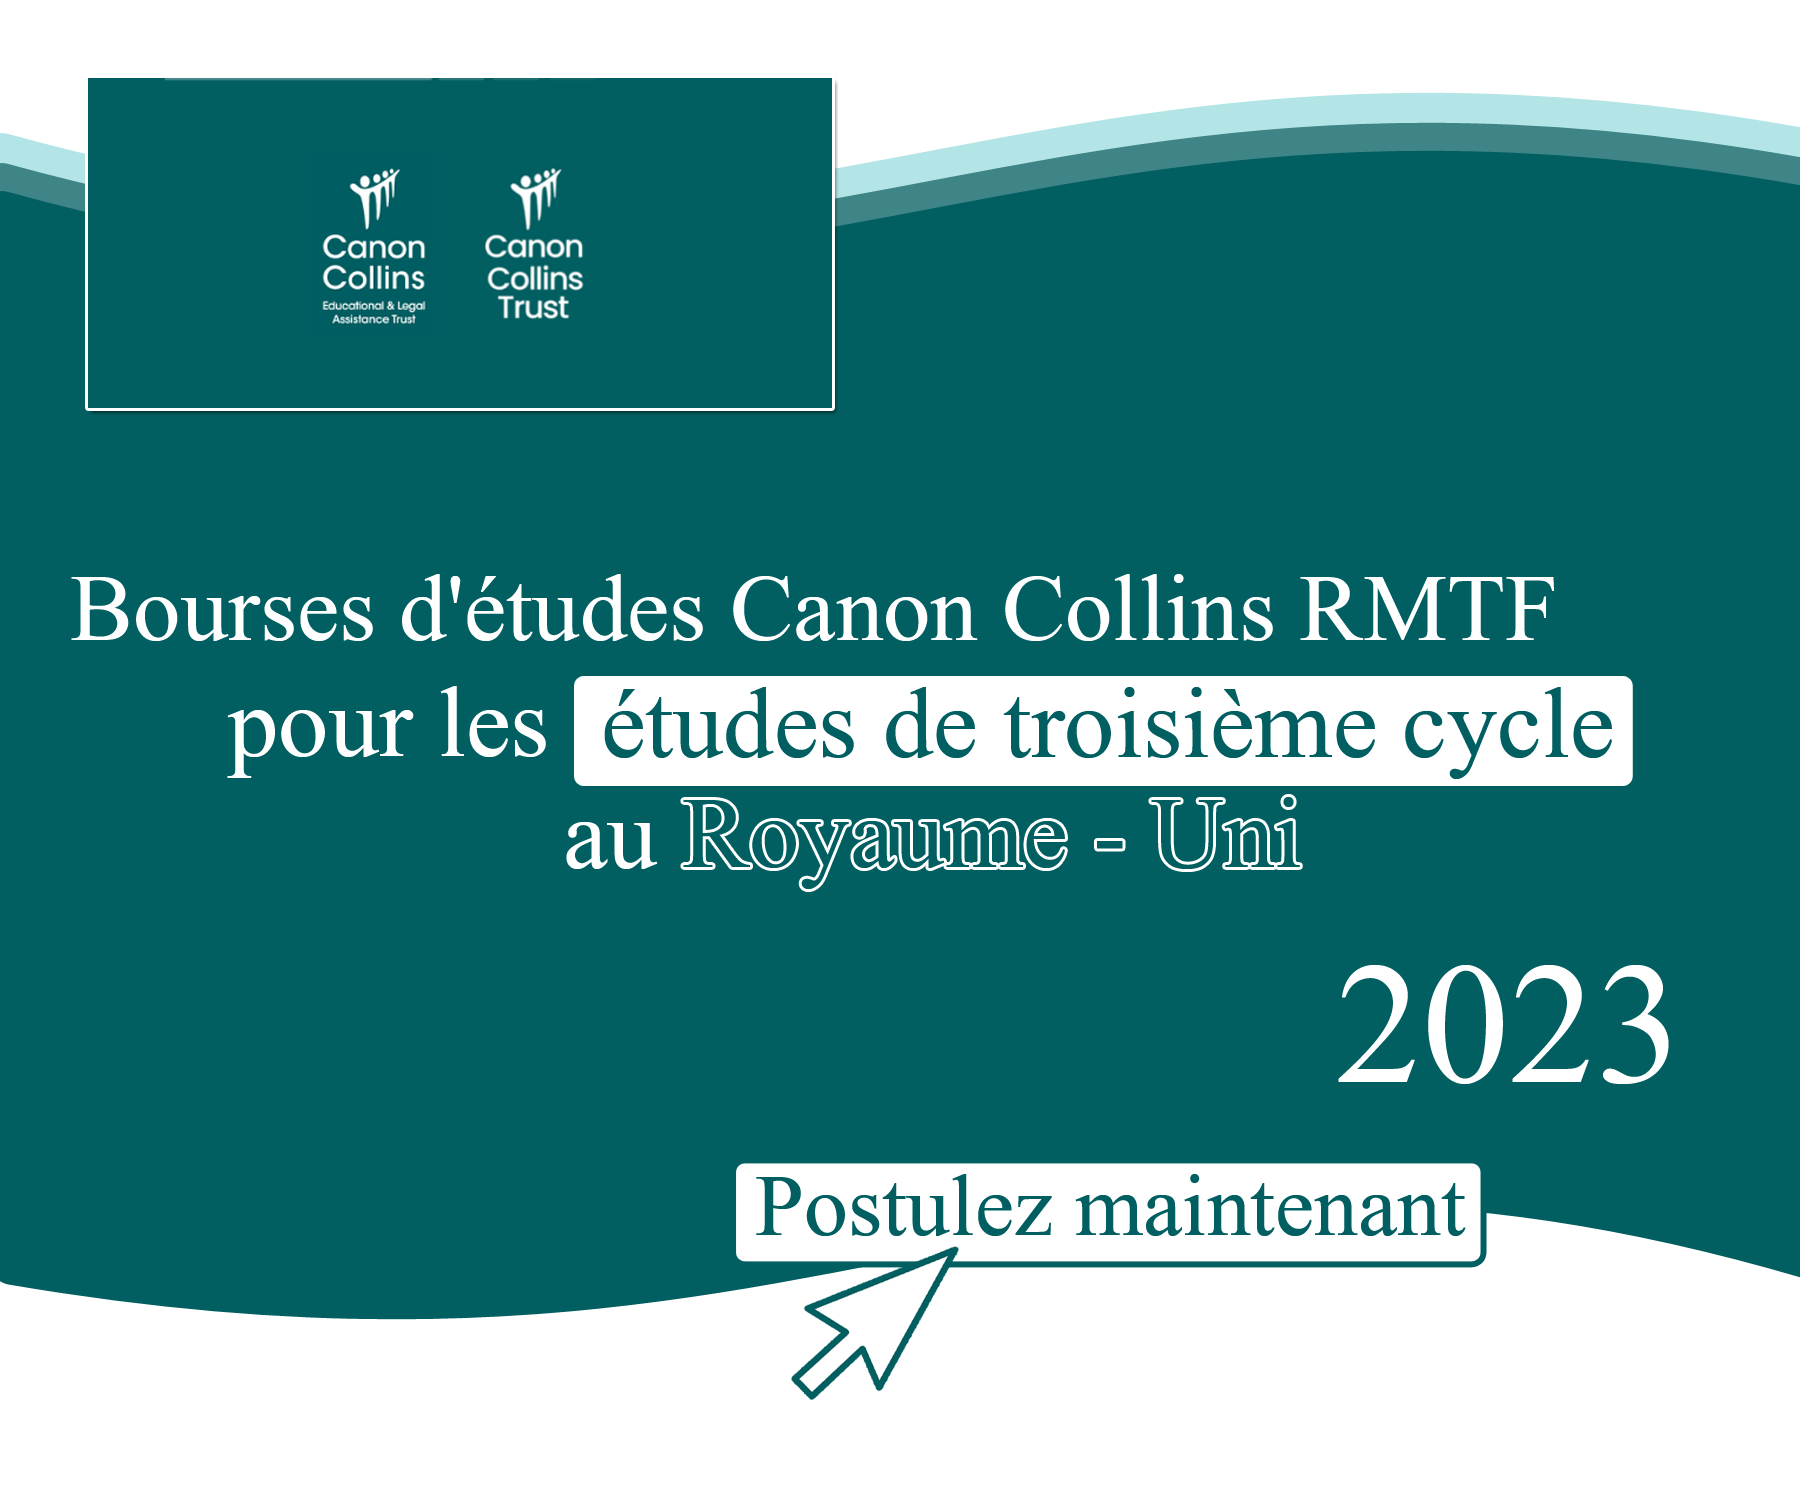 Bourses d’études Canon Collins RMTF pour des études de troisième cycle au Royaume-Uni 2023